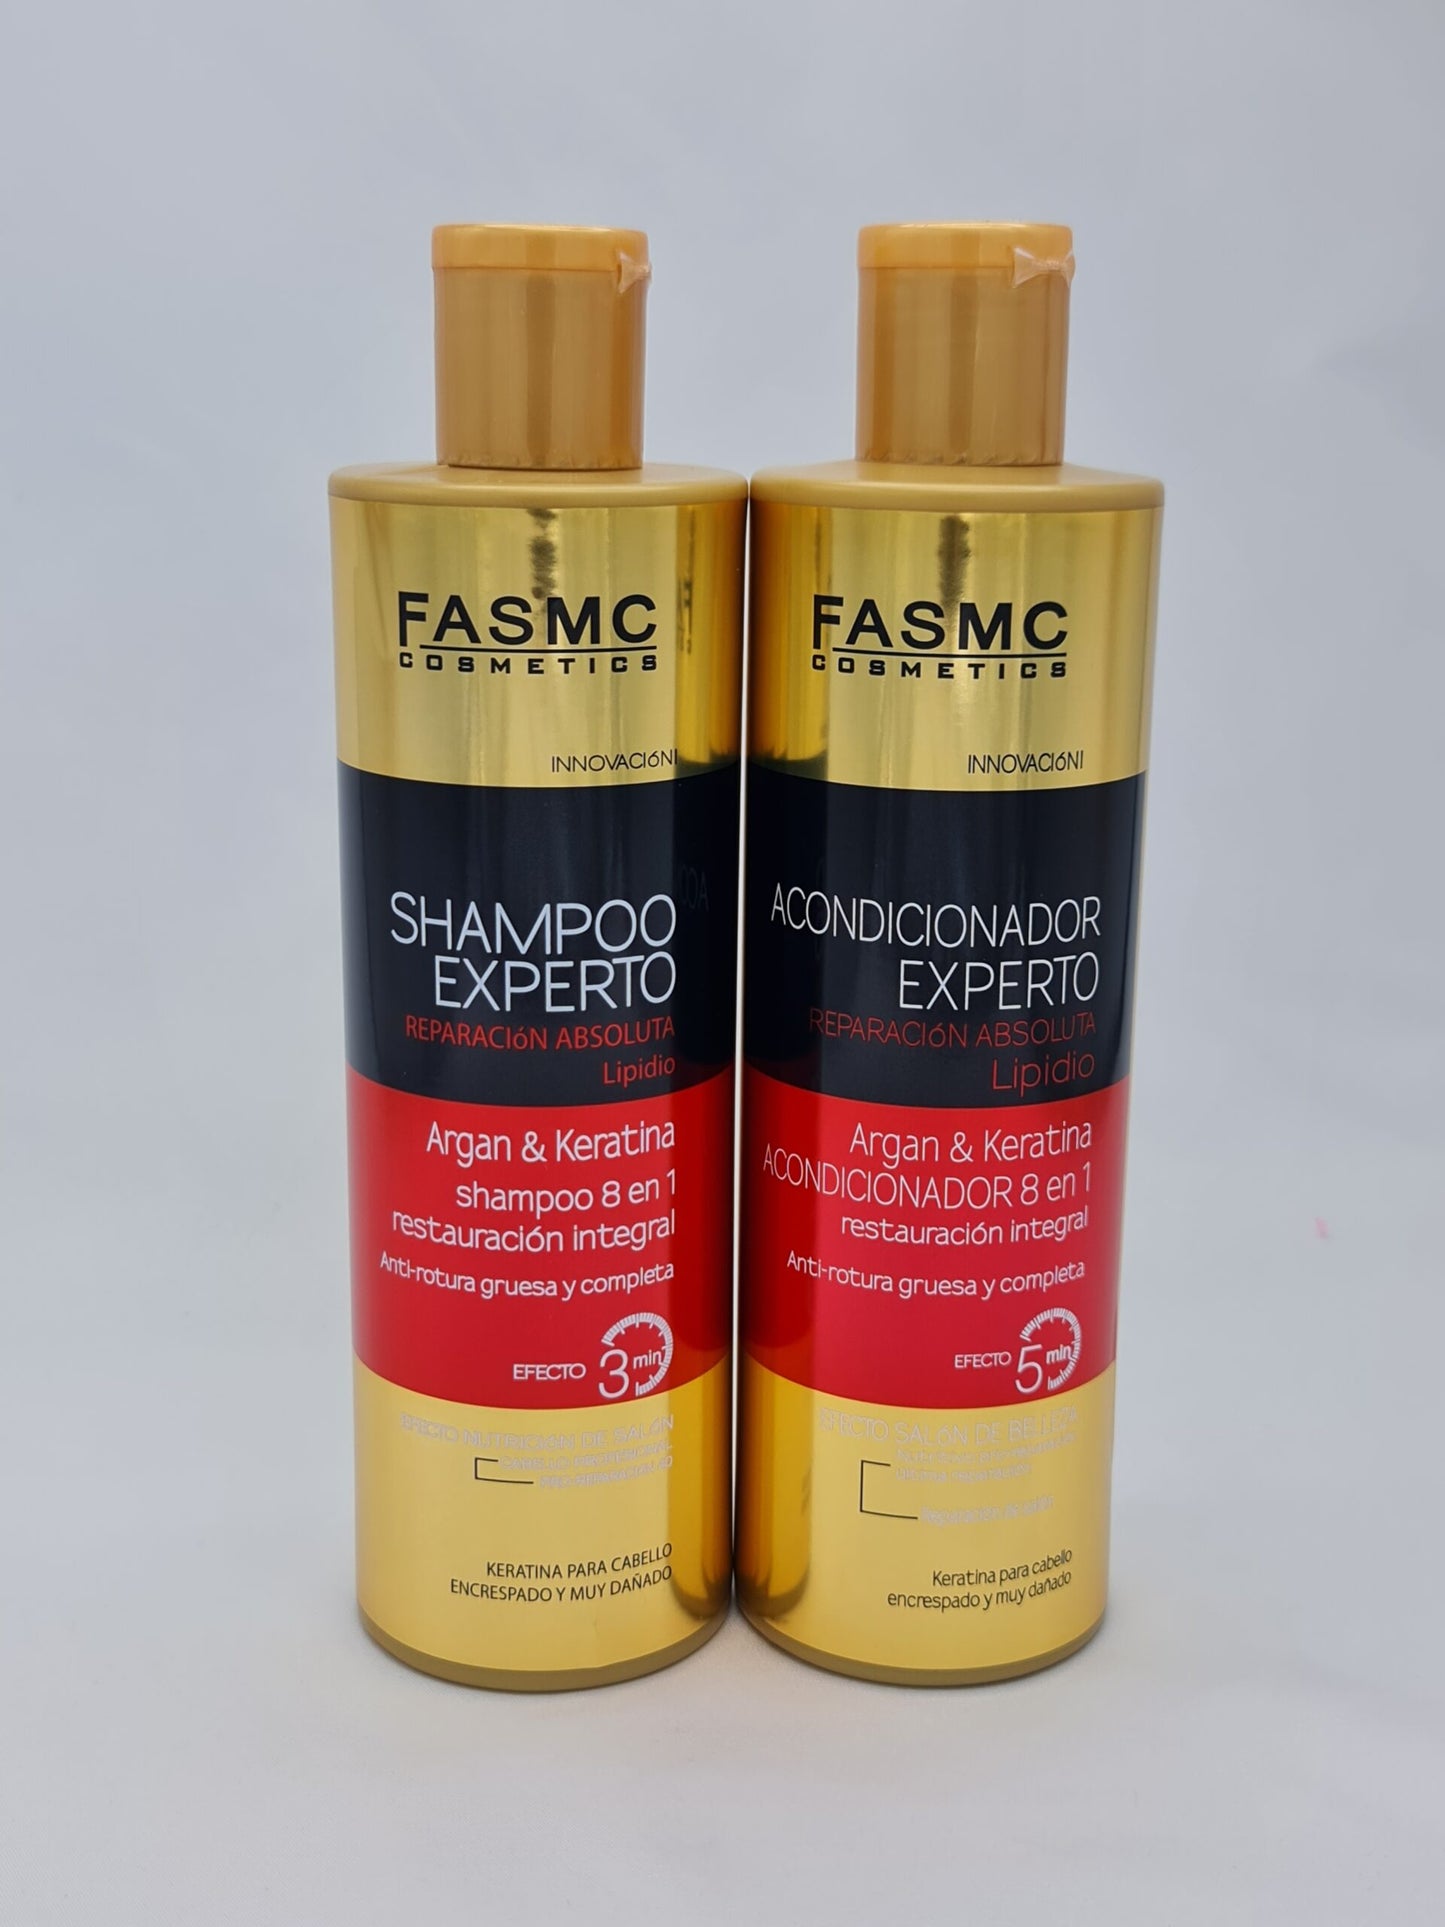 Shampoo de argán y keratina Anti-rotura gruesa y completa 500 mg - Fasmc